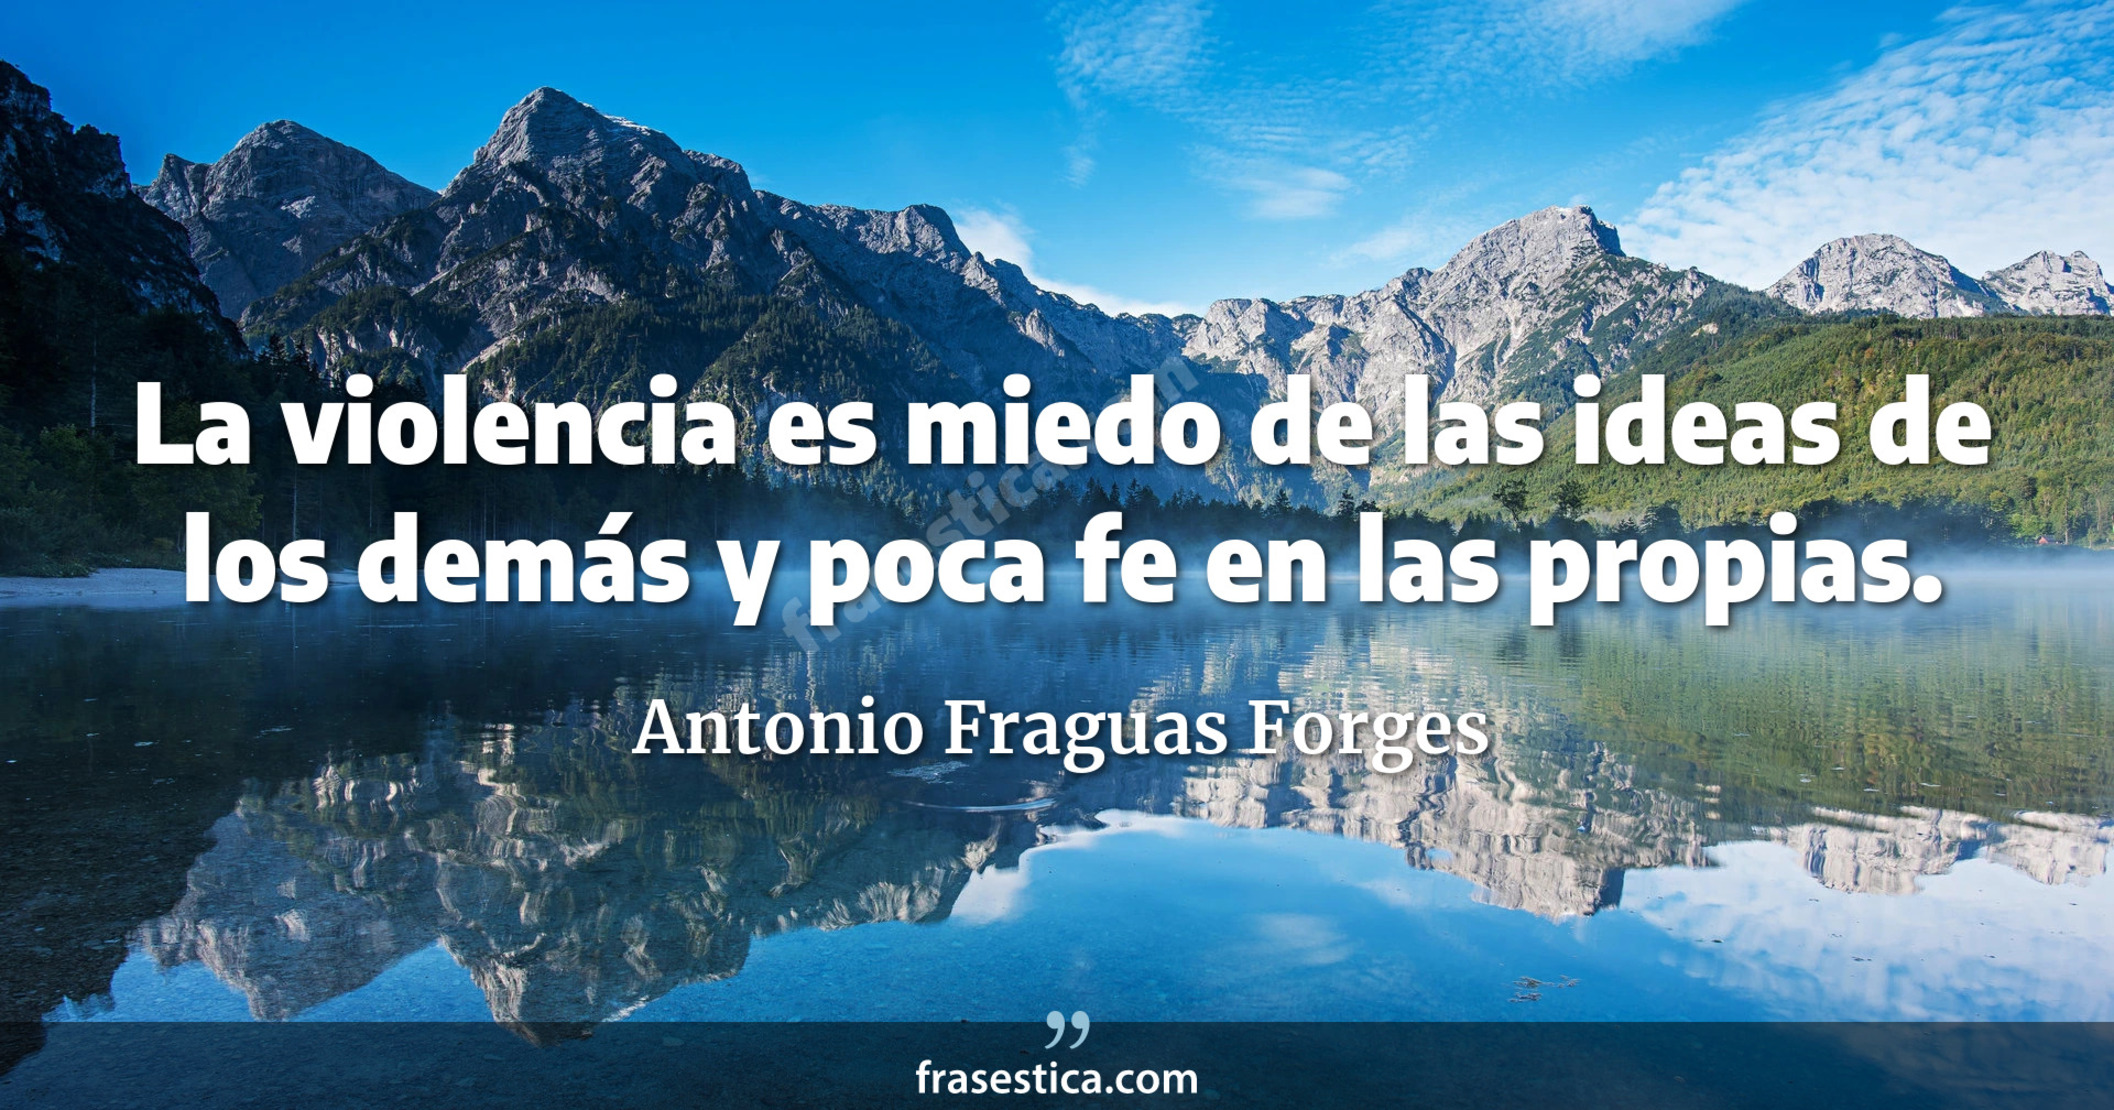 La violencia es miedo de las ideas de los demás y poca fe en las propias. - Antonio Fraguas Forges